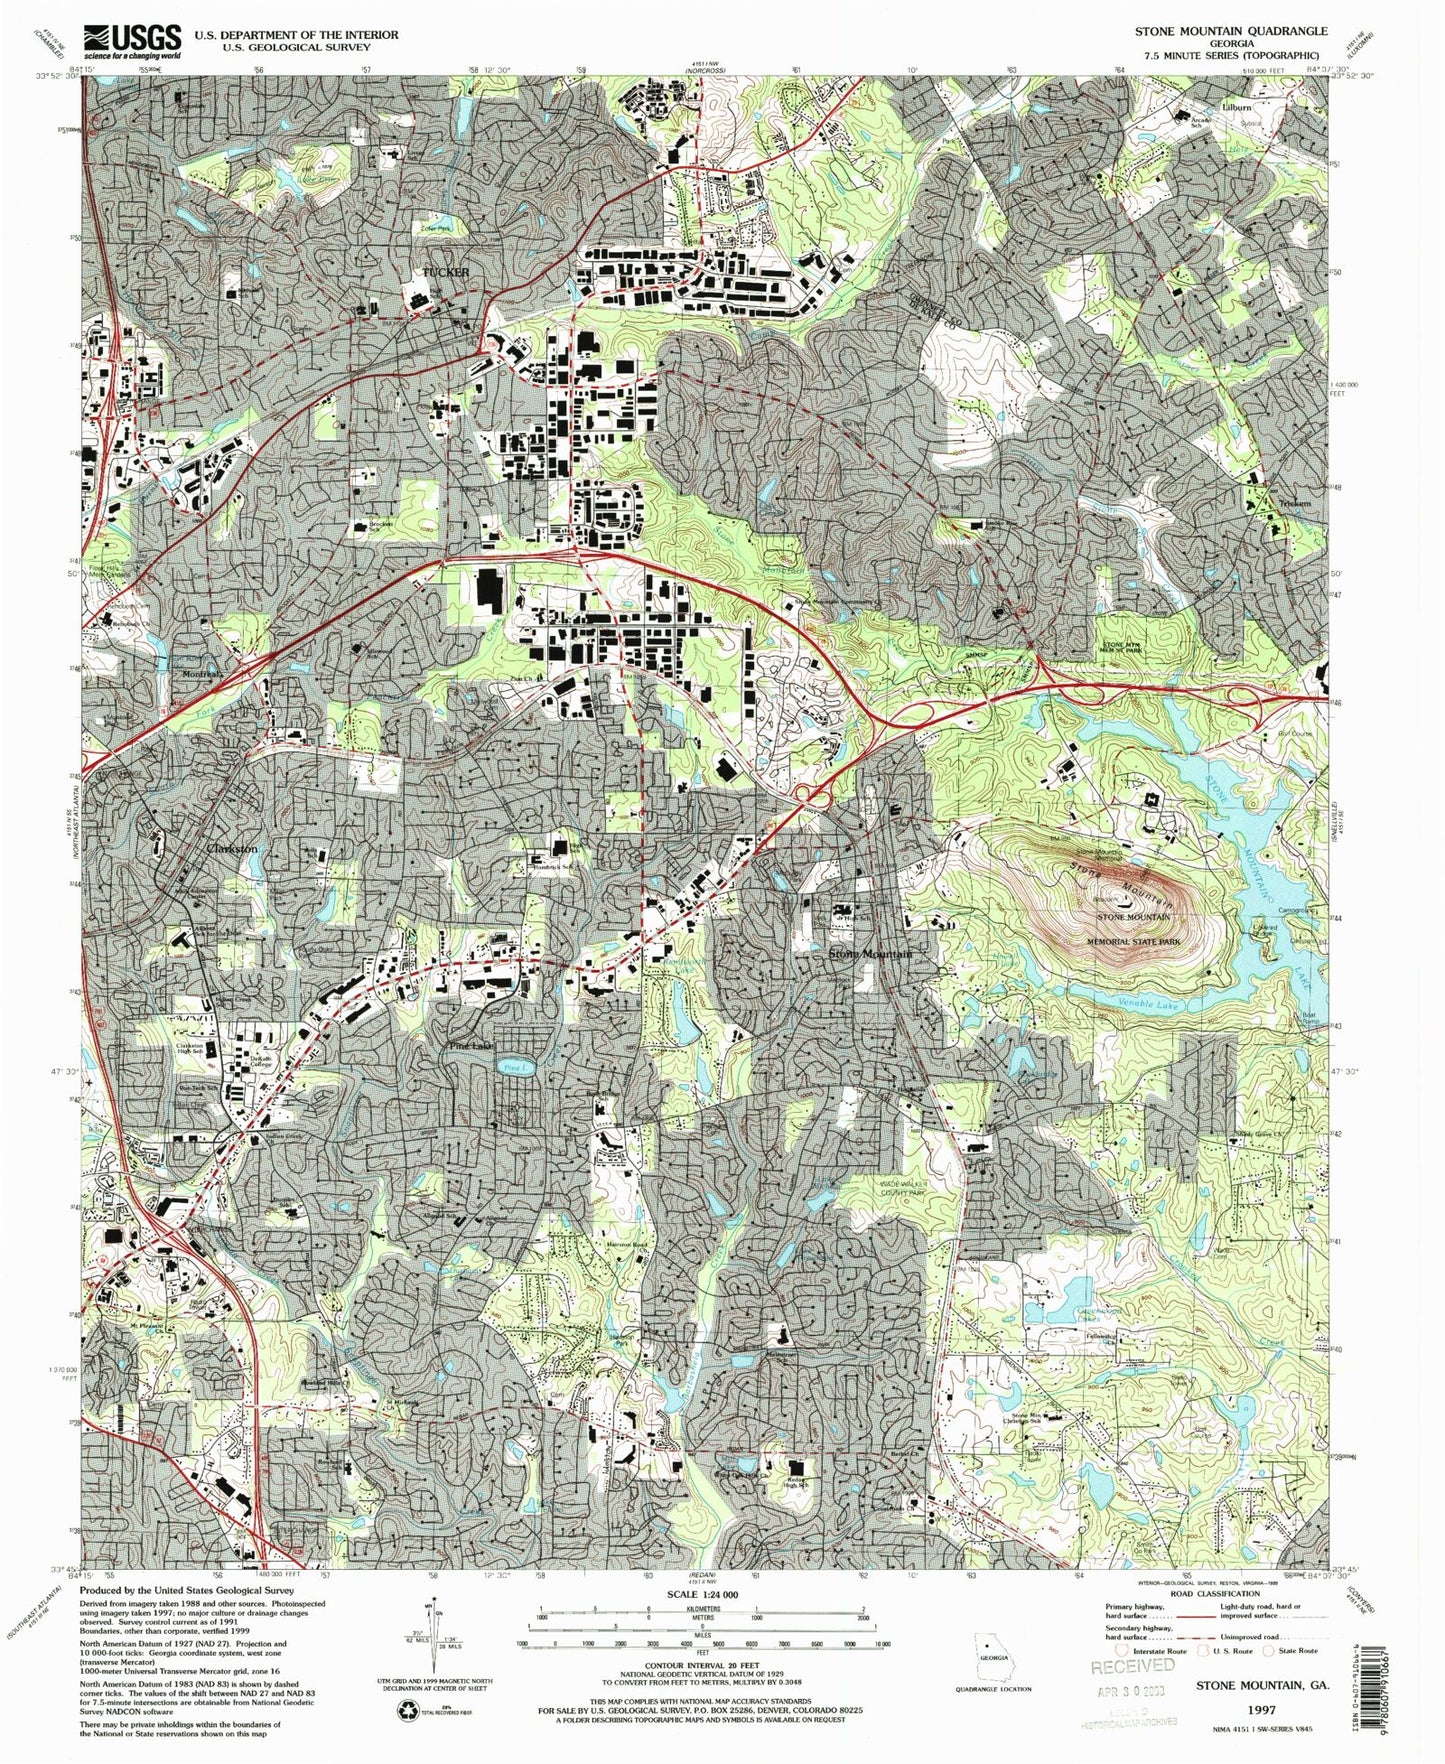 Classic USGS Stone Mountain Georgia 7.5'x7.5' Topo Map Image